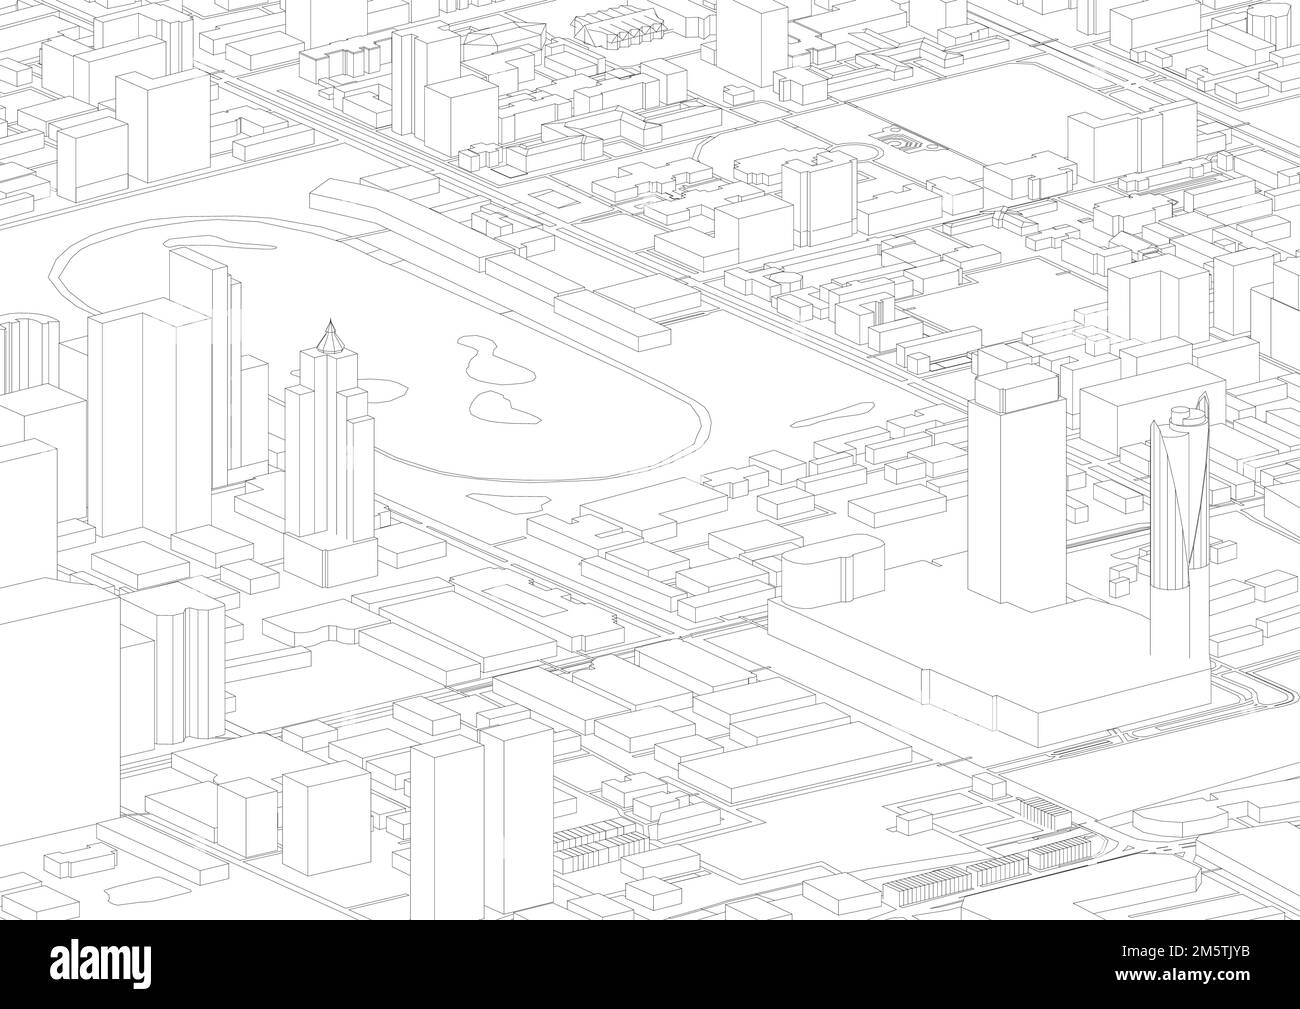 architettura isometrica bangkok city outline. infografica isometrica con architettura edilizia, urbana, sfondo bianco astratto, vettore. isometrica Illustrazione Vettoriale